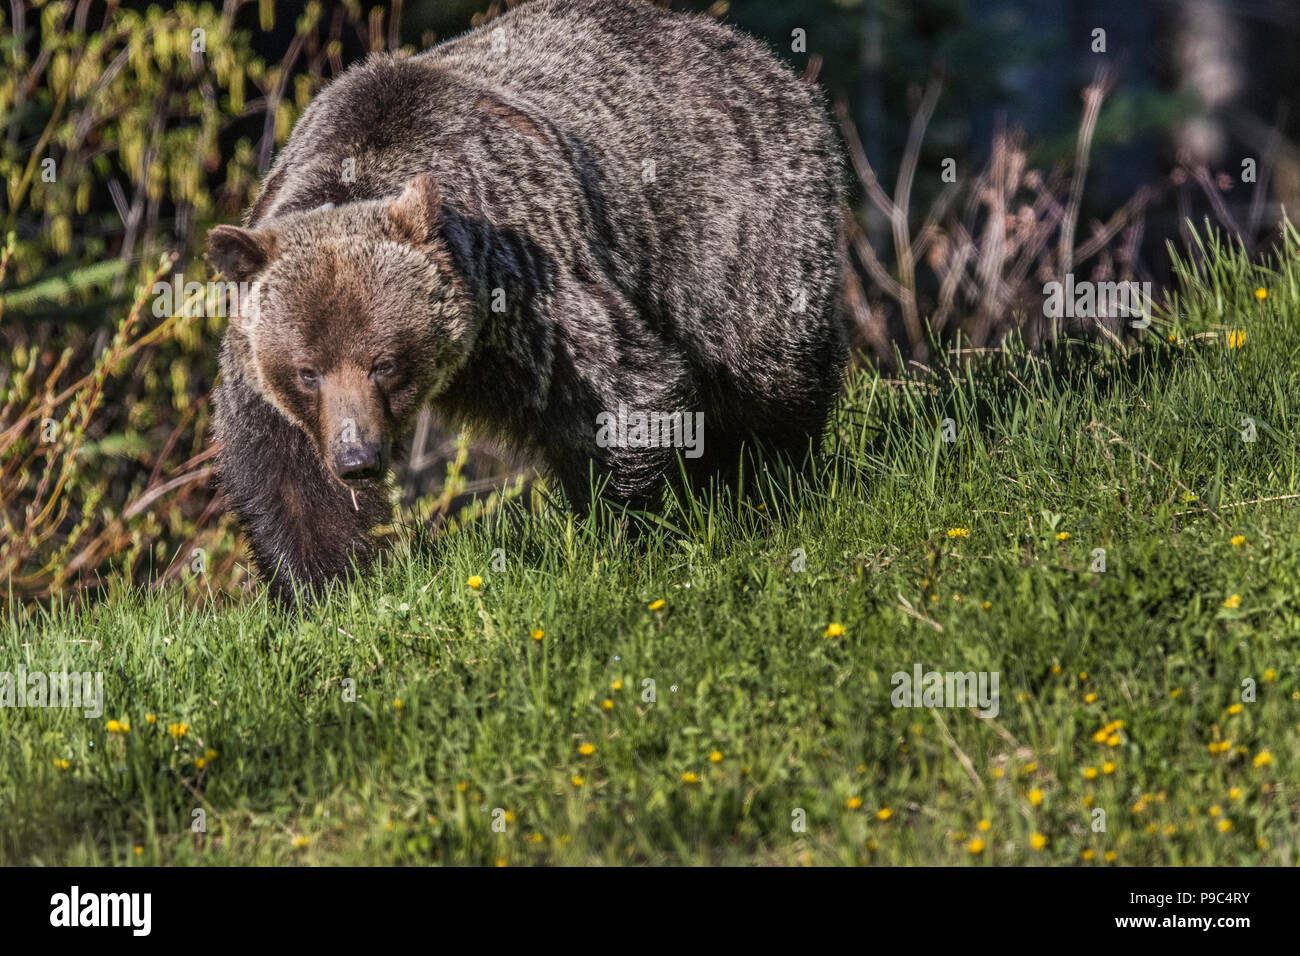 Orso grizzly femmina (Ursus arctos horribilis) sulla testa, il livello degli occhi, colpo di grizzly femmina, guardando alla fotocamera, nel campo di tarassaco. Foto Stock